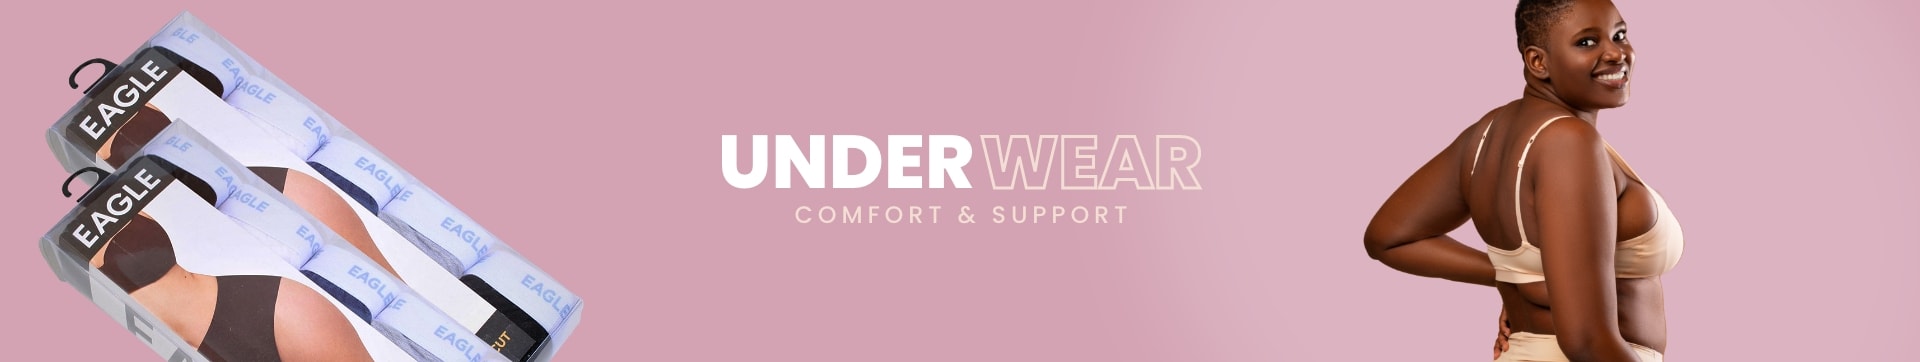 Ladies Underwear Collection Banner - Desktop